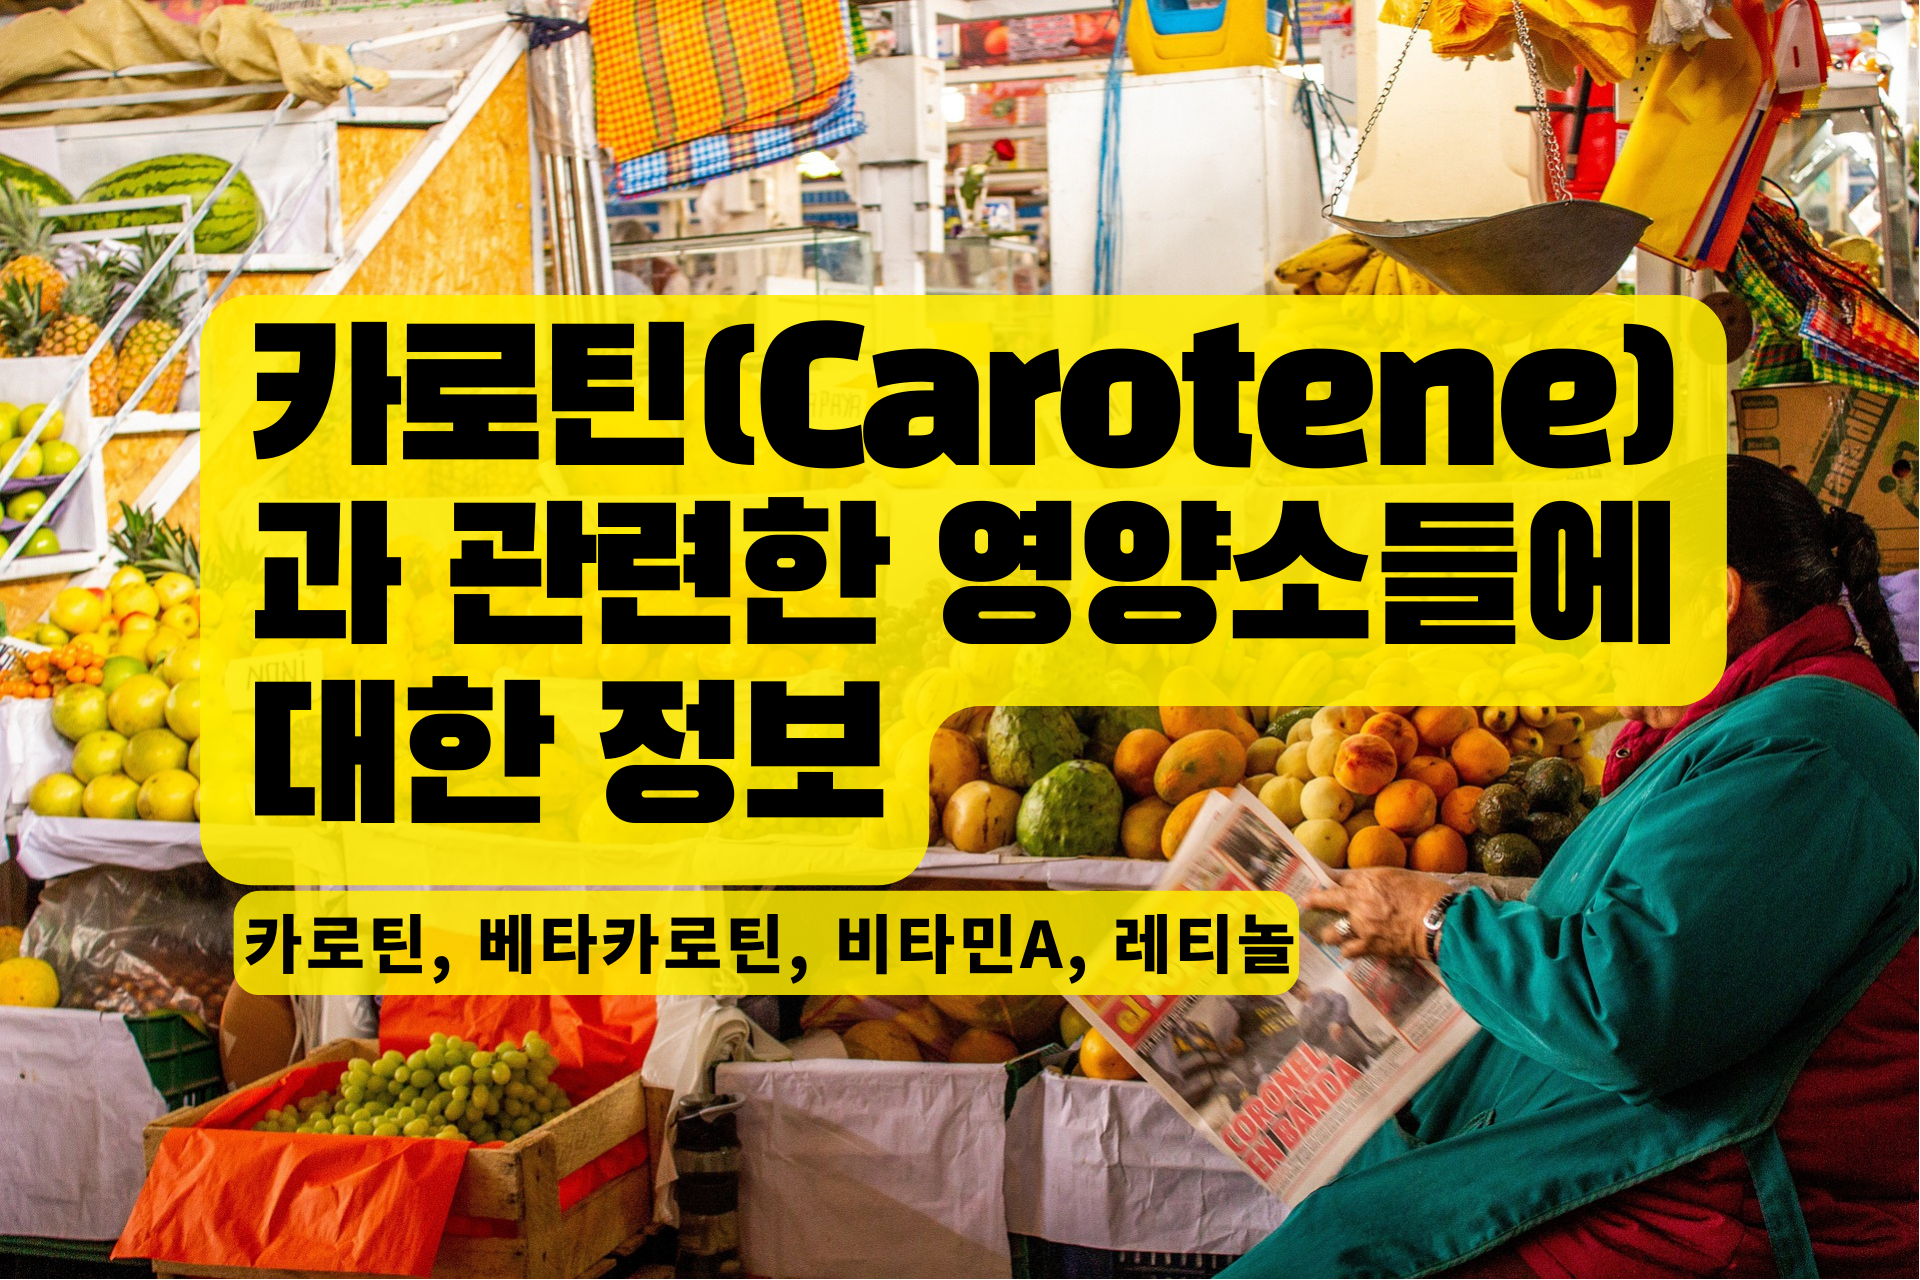 You are currently viewing 카로틴(Carotene)과 관련한 영양소들에 대한 정보